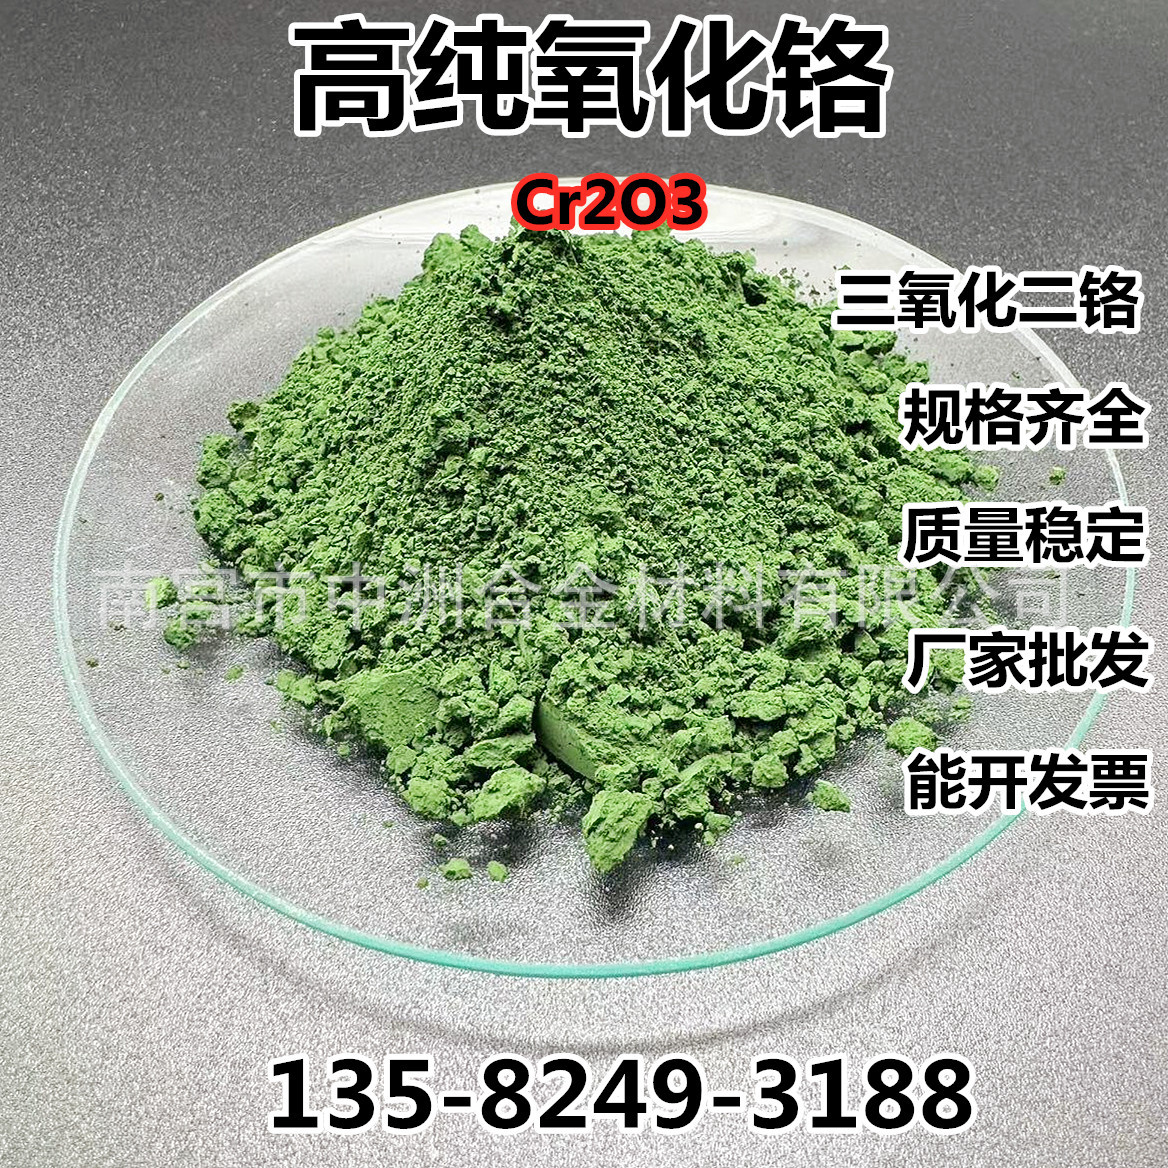 氧化铬粉超细微米纳米氧化铬绿色三氧化二铬Cr203高纯氧化铬粉